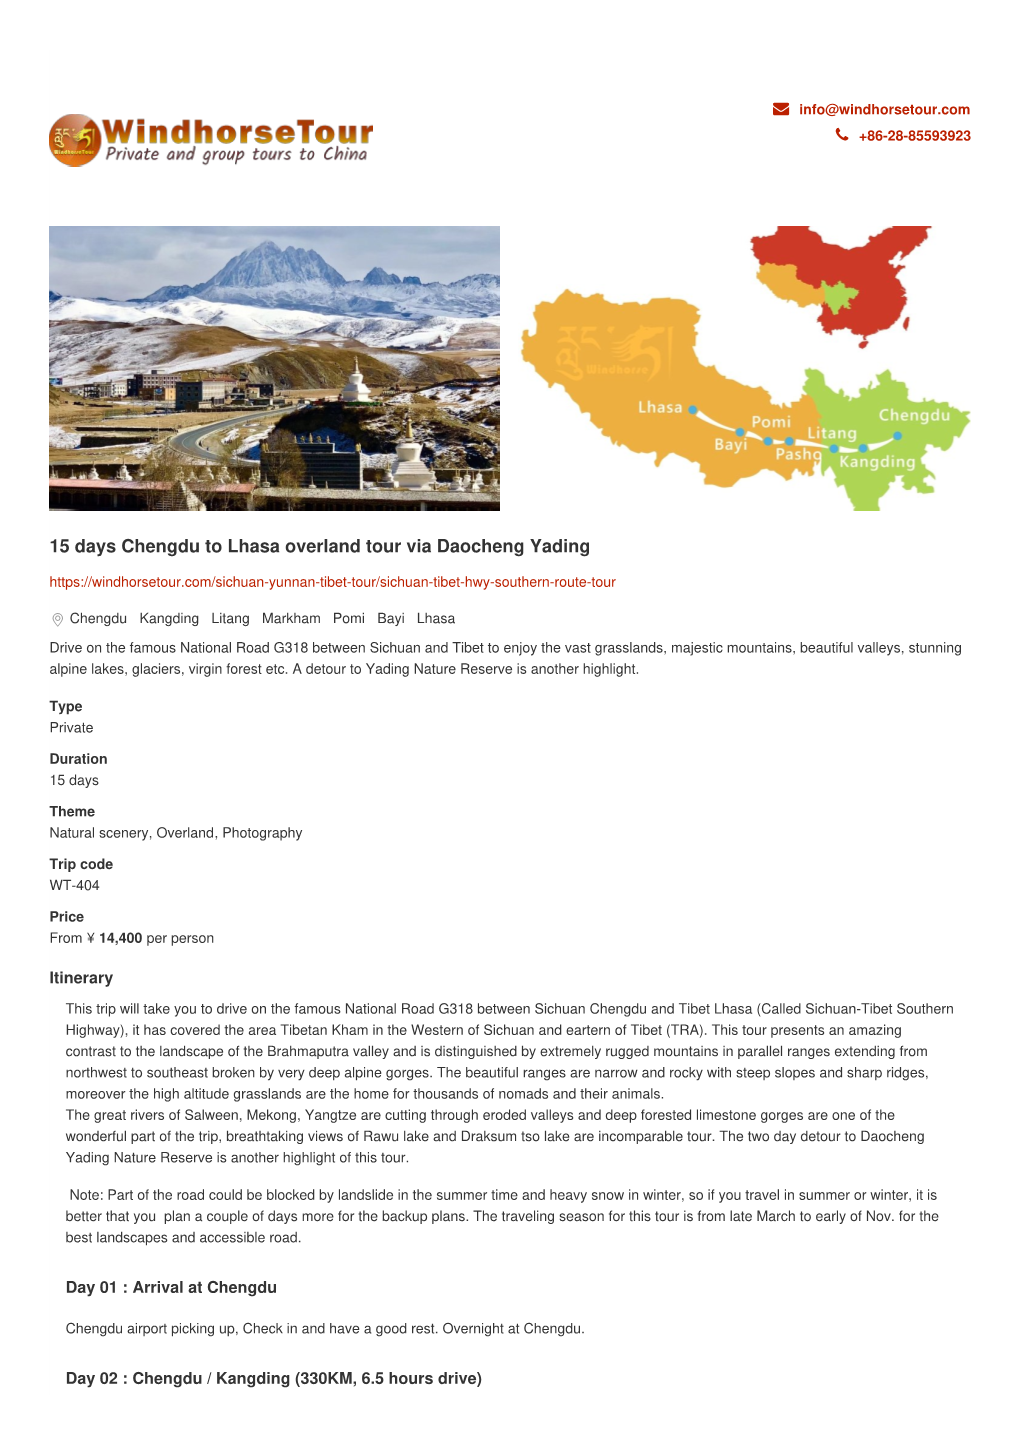 15 Days Chengdu to Lhasa Overland Tour Via Daocheng Yading